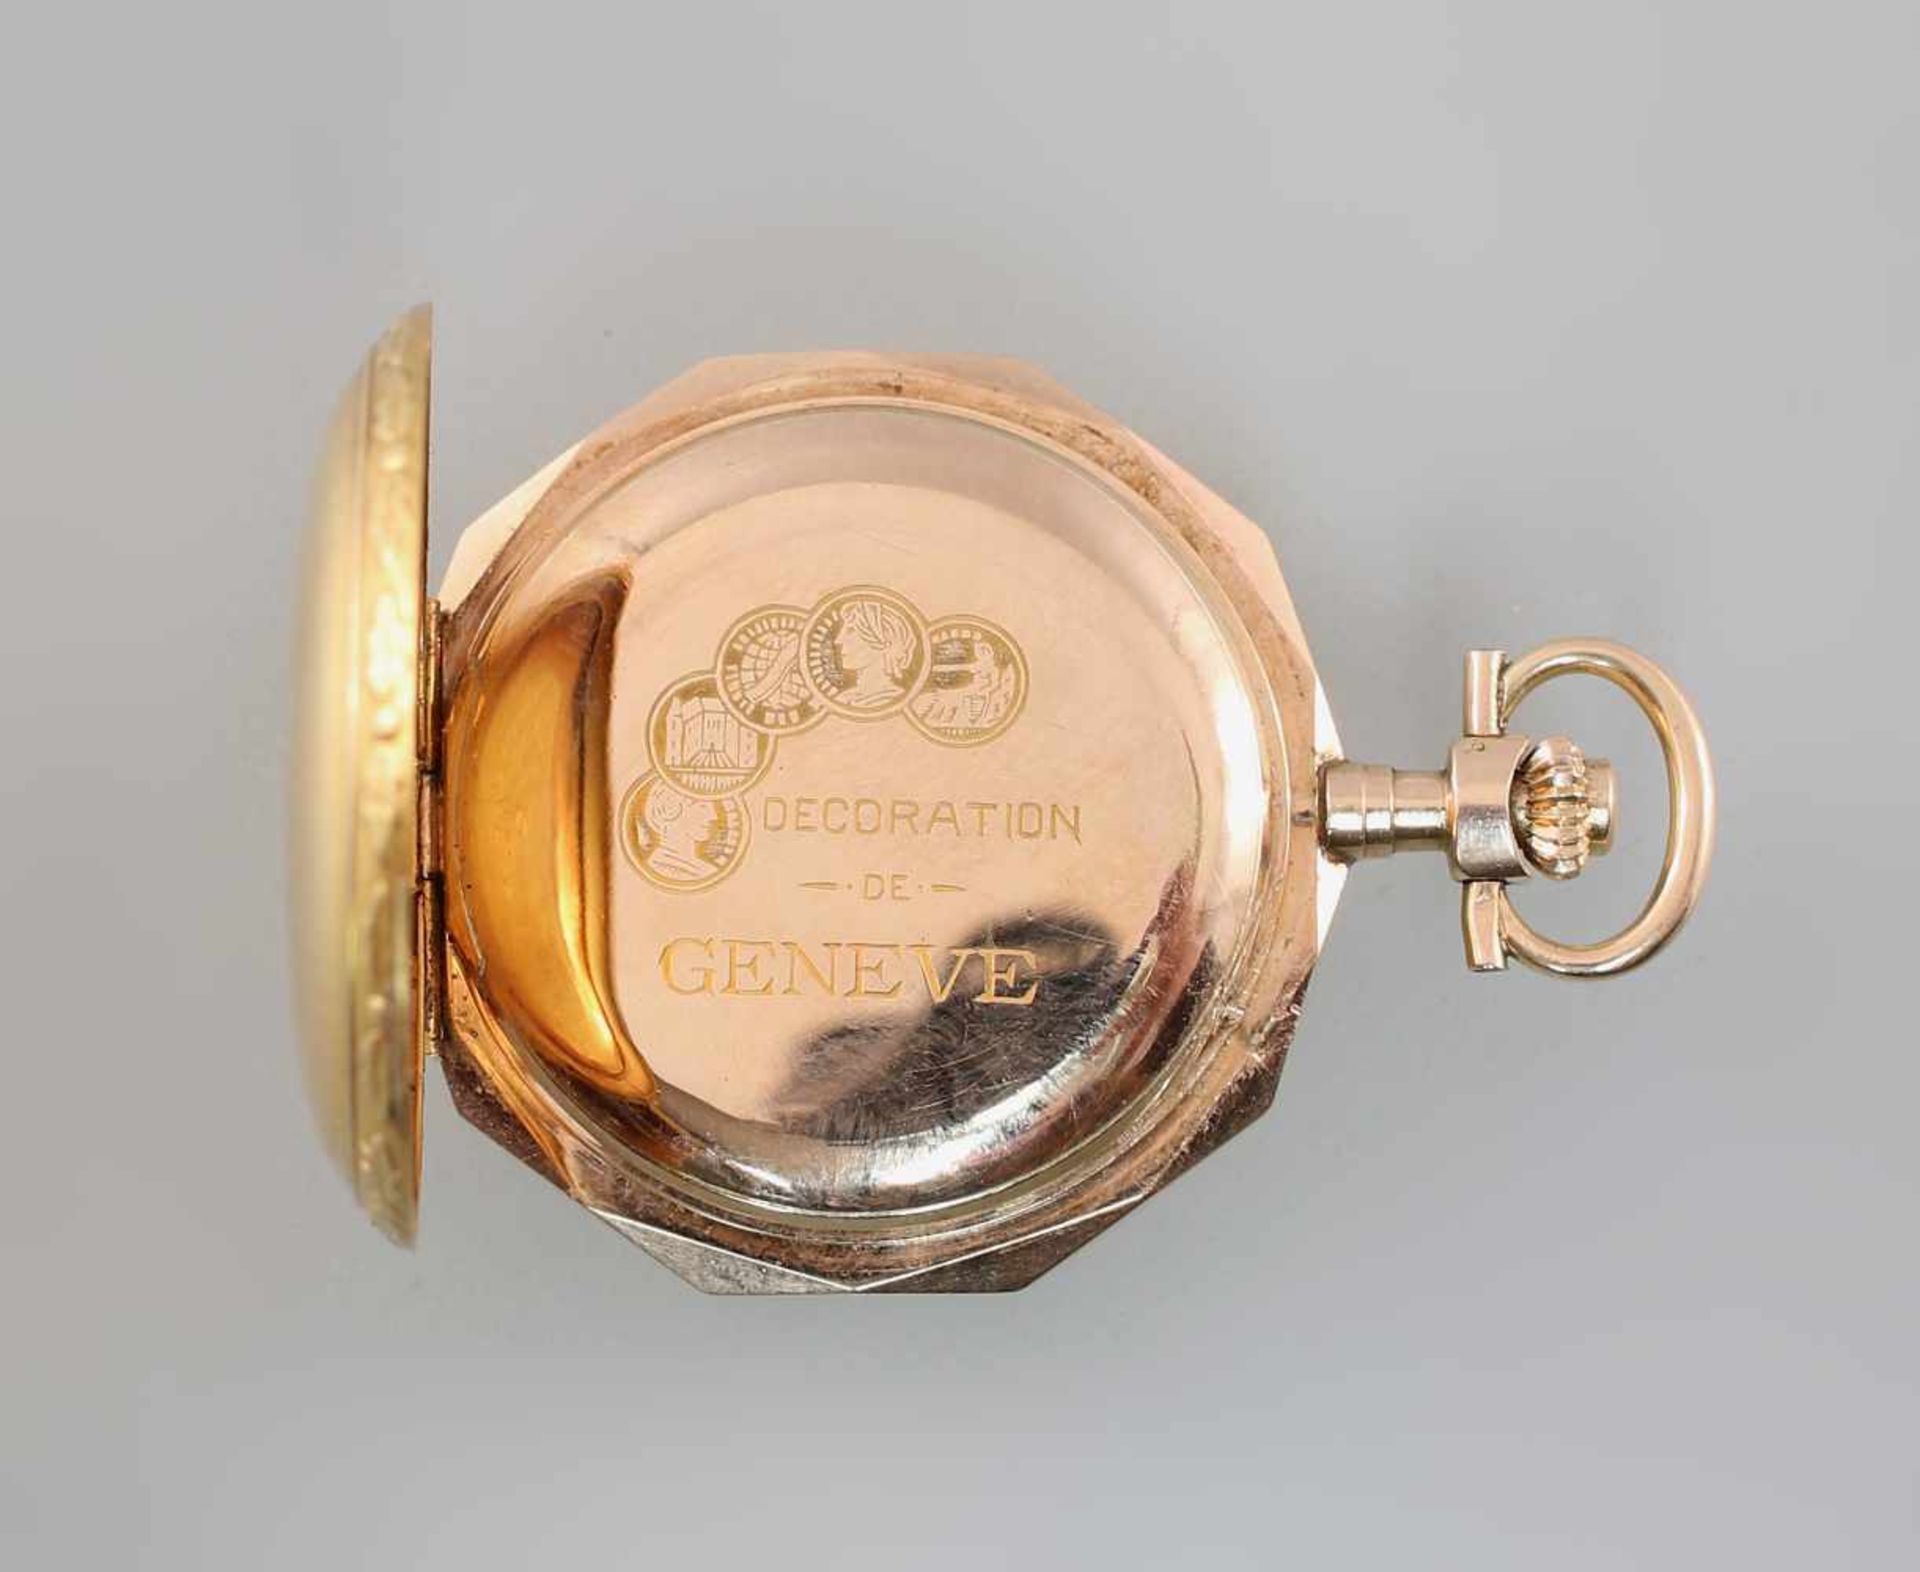 Goldene Savonette Damentaschenuhr Spätbiedermeierum 1880, 585er Gold, alle 3 Deckel gepunzt 14K - Bild 4 aus 5